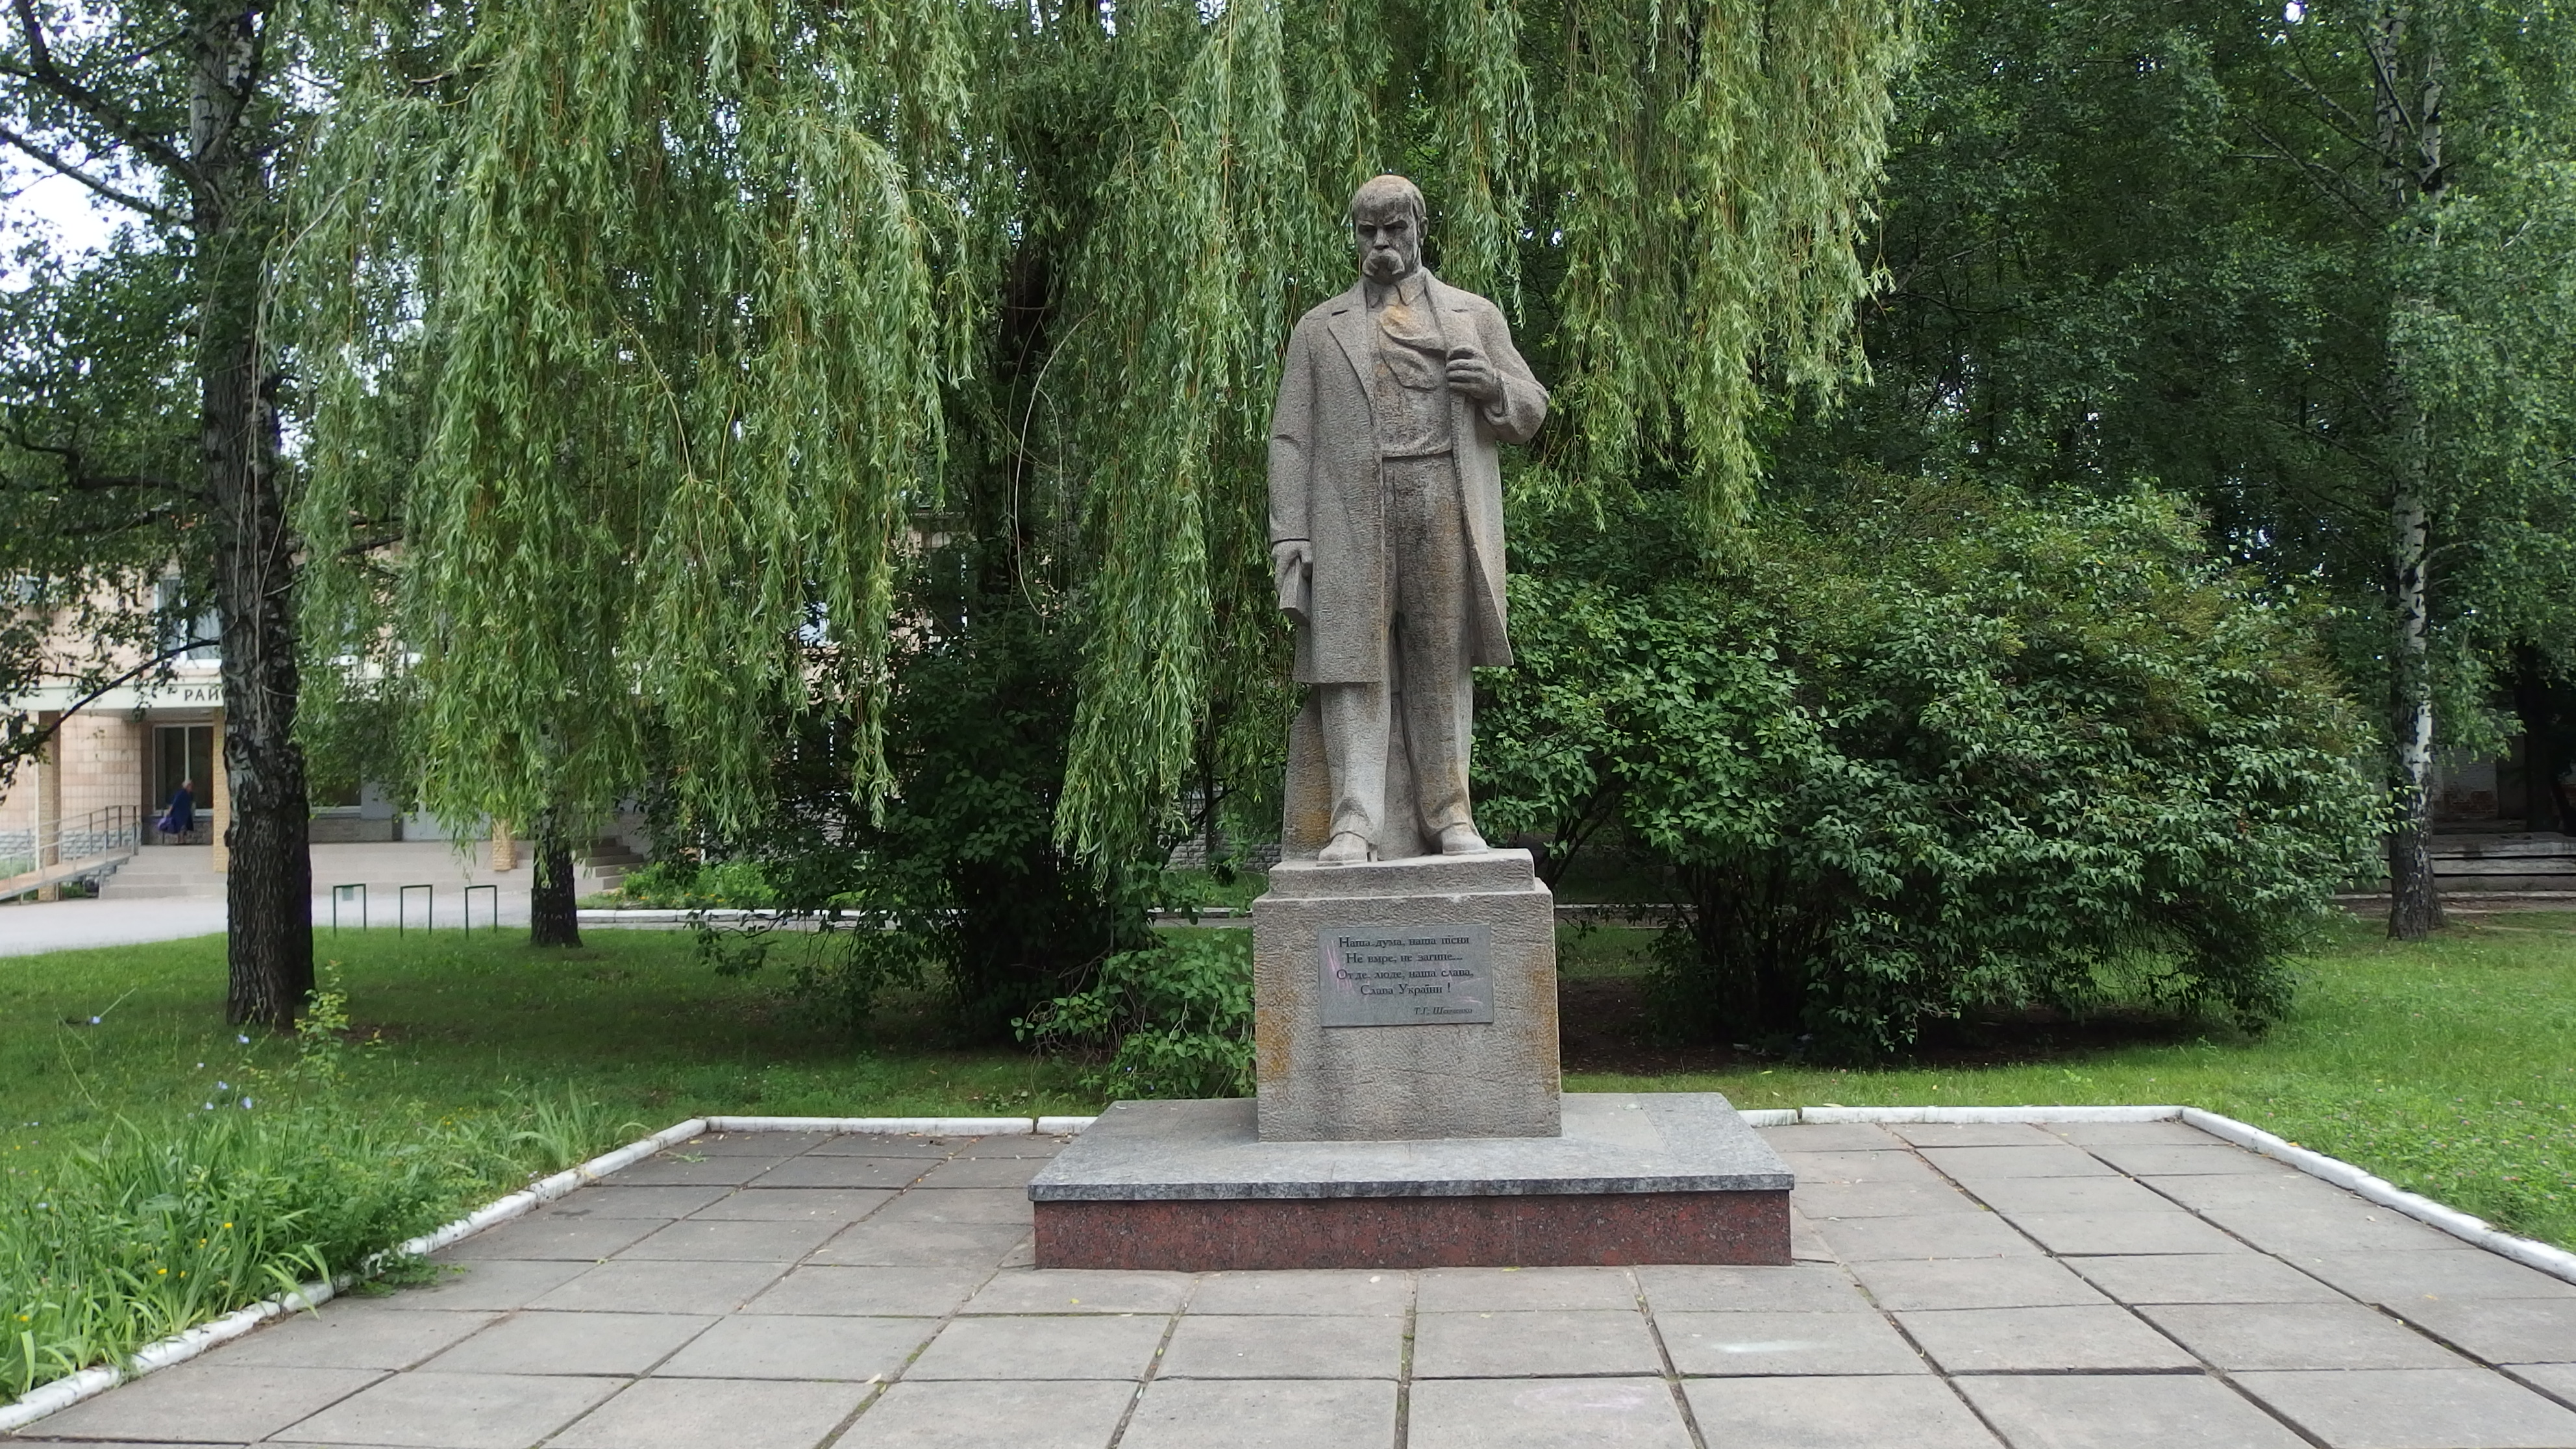 памятник прокофьеву в москве